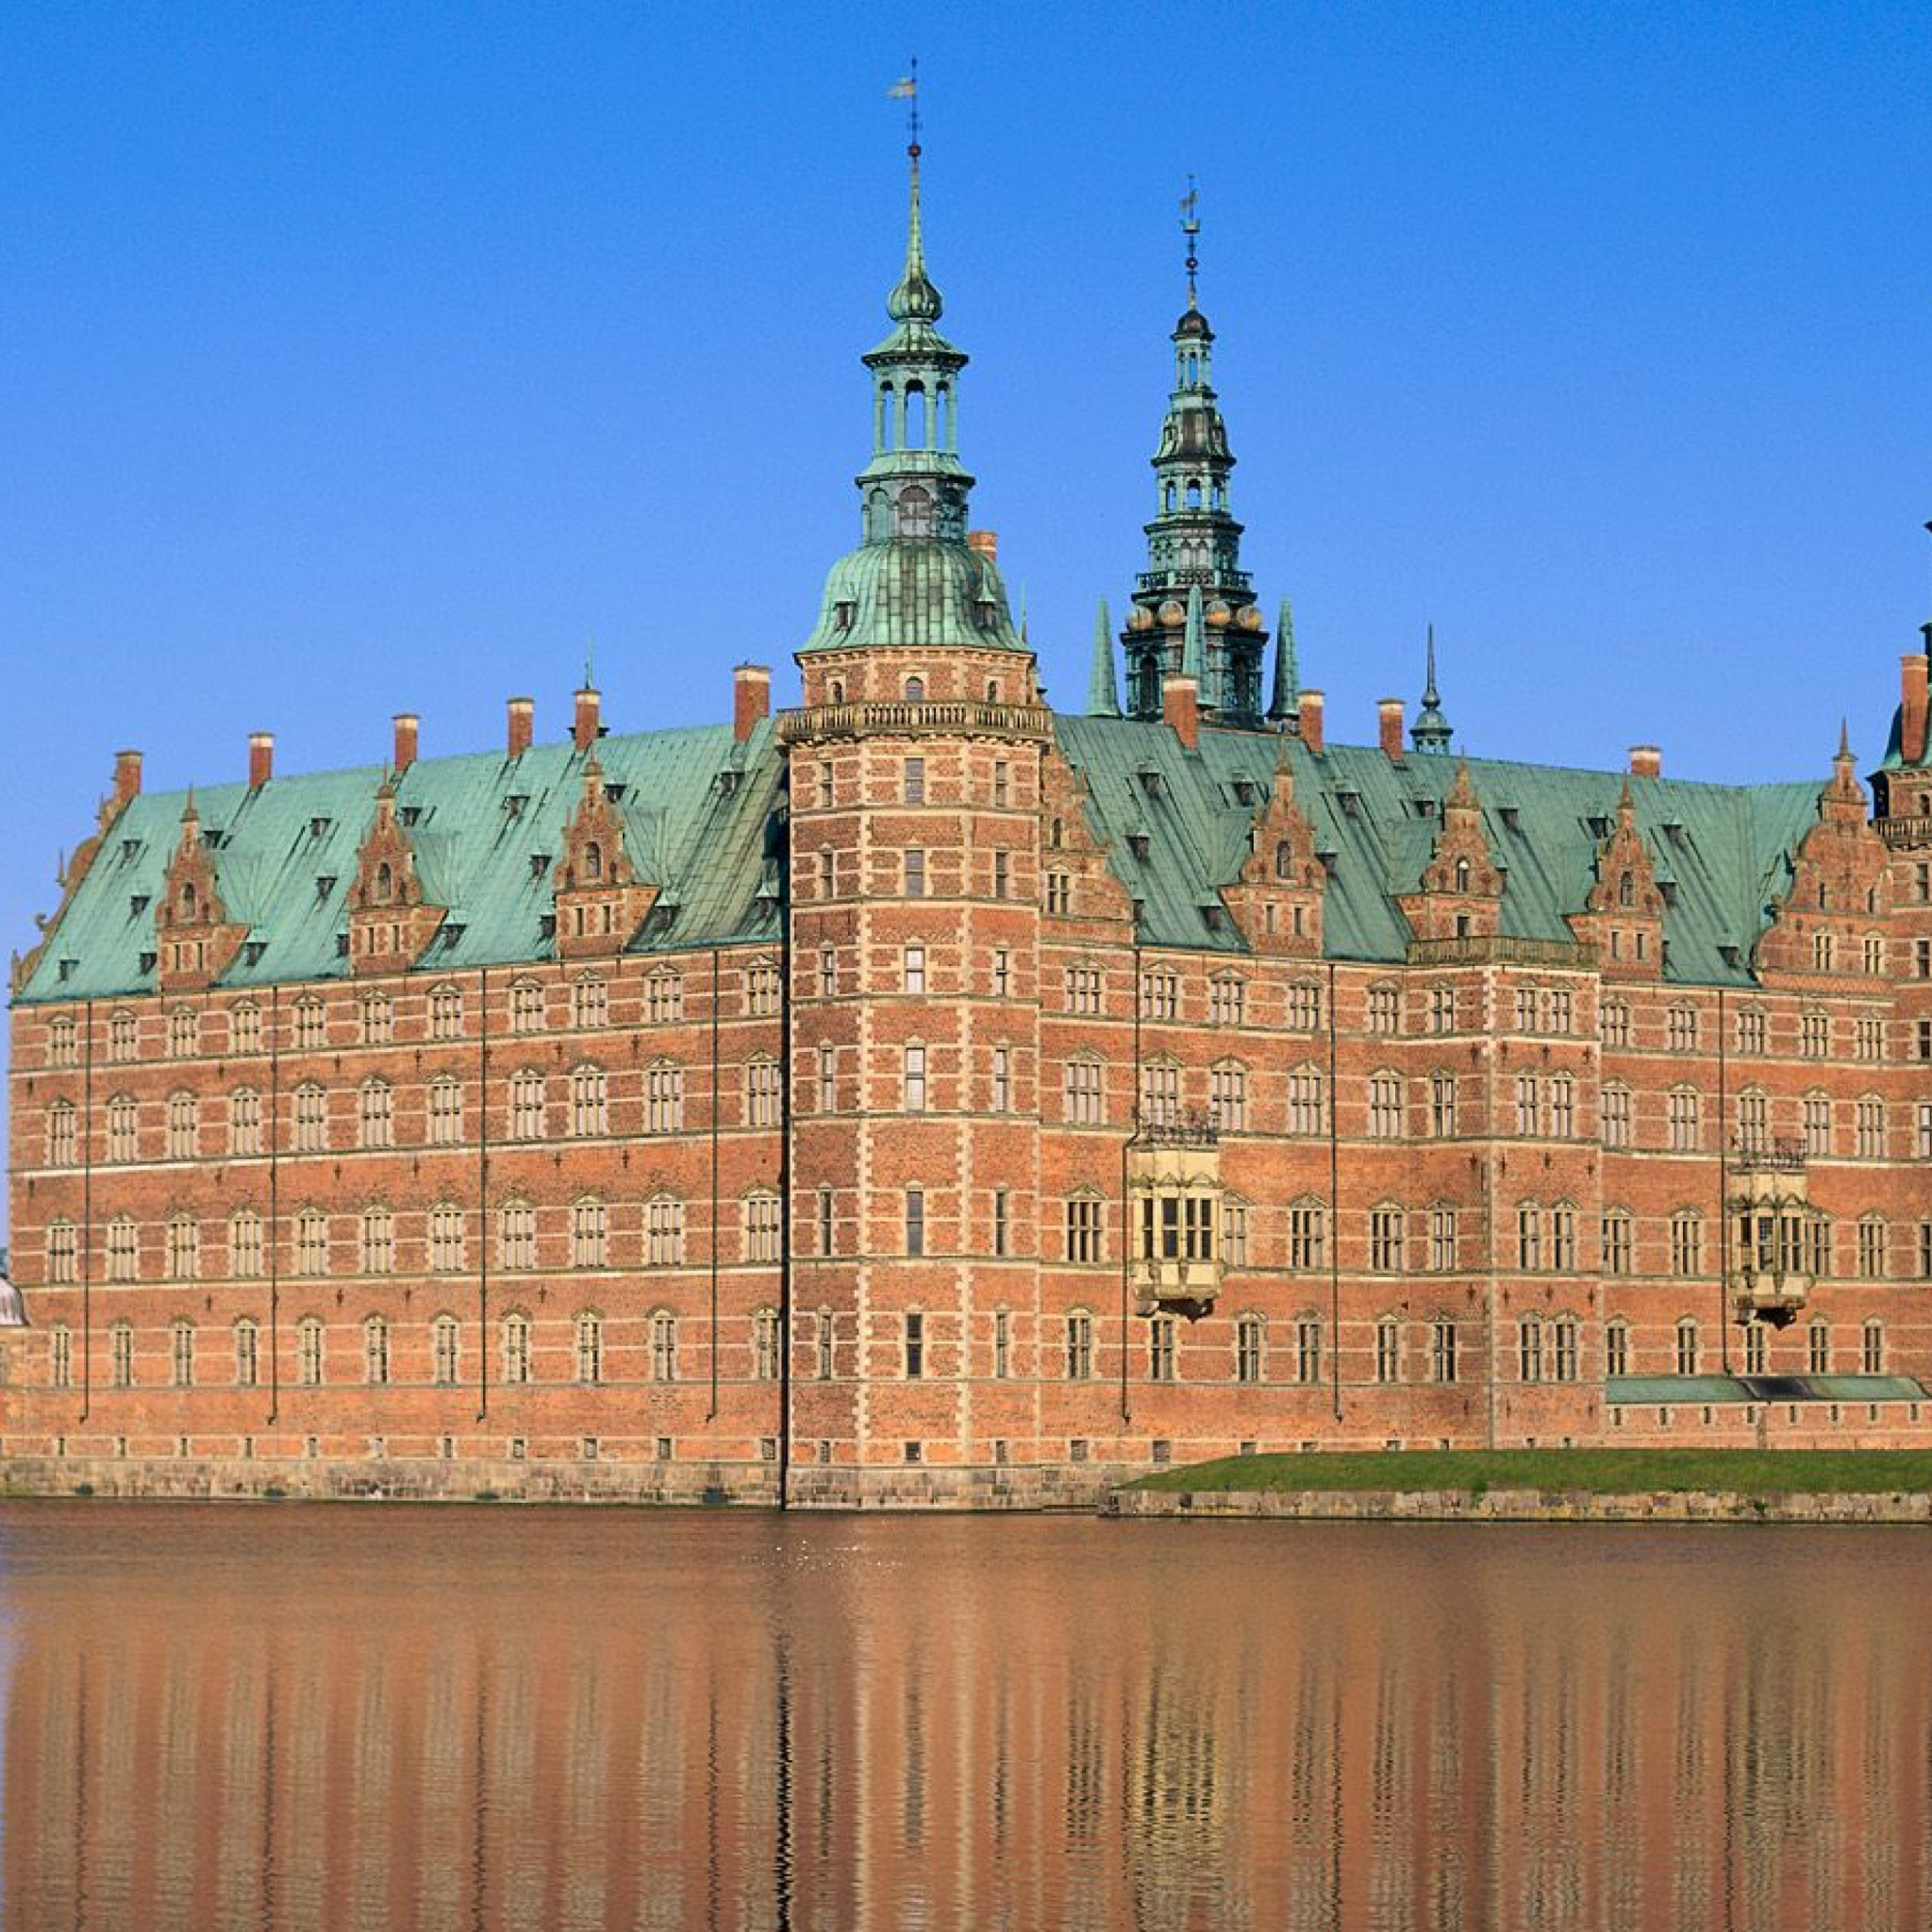 Достопримечательность какой страны является. Дворец Фредериксборг Копенгаген. Замок Фредериксборг (г. Хиллеред).